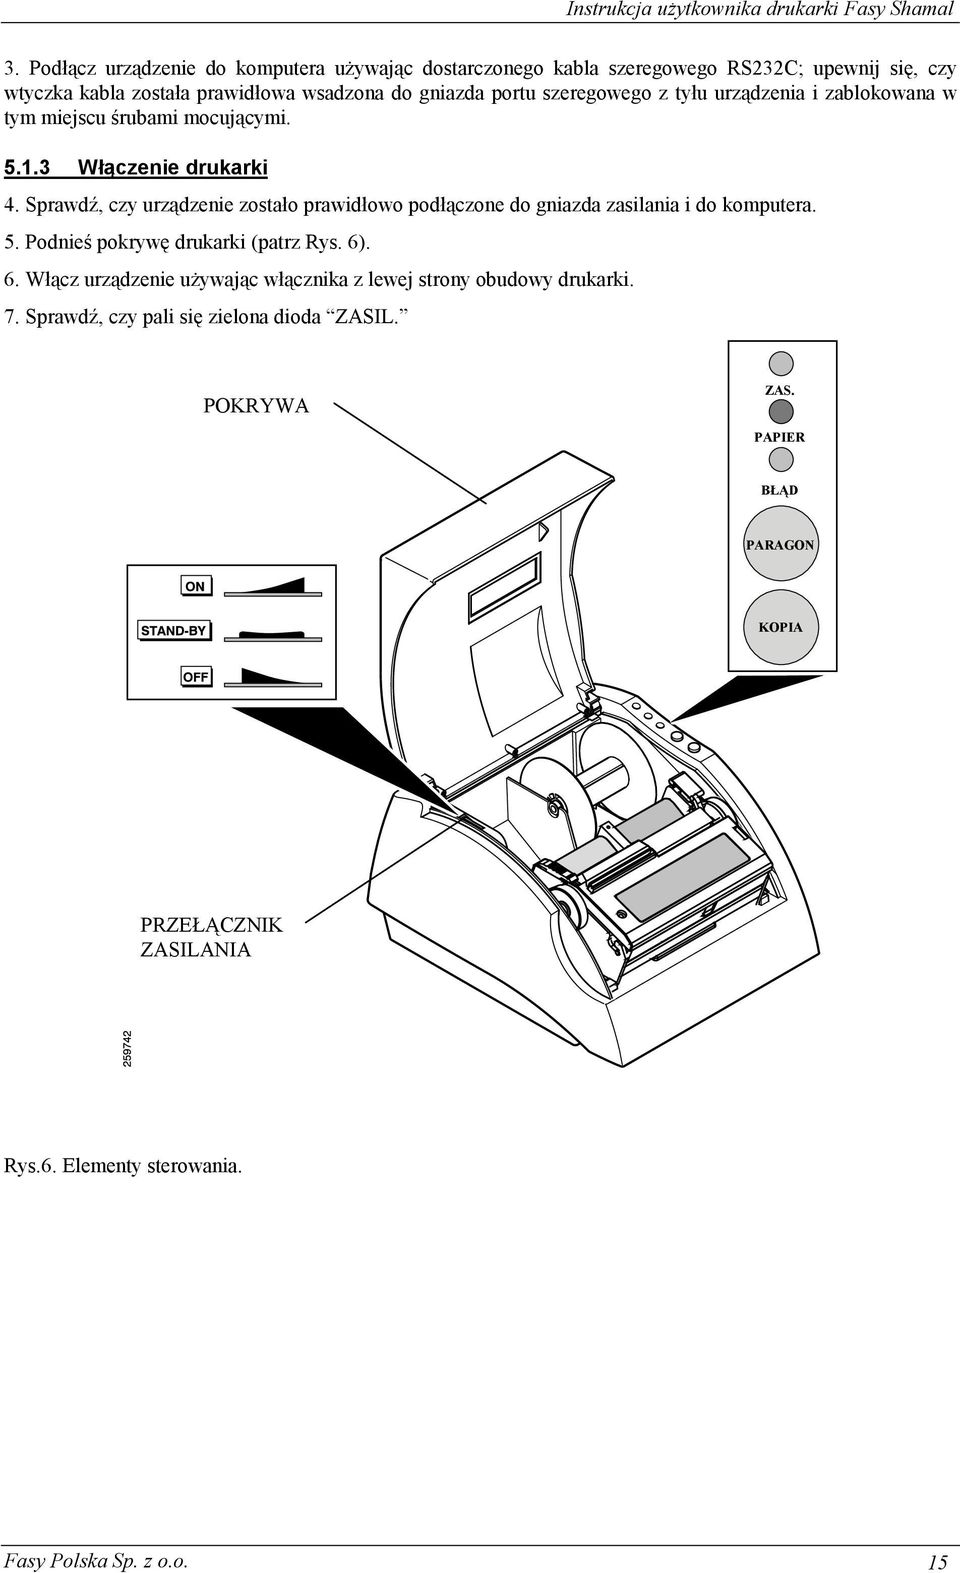 Sprawdź, czy urządzenie zostało prawidłowo podłączone do gniazda zasilania i do komputera. 5. Podnieś pokrywę drukarki (patrz Rys. 6)